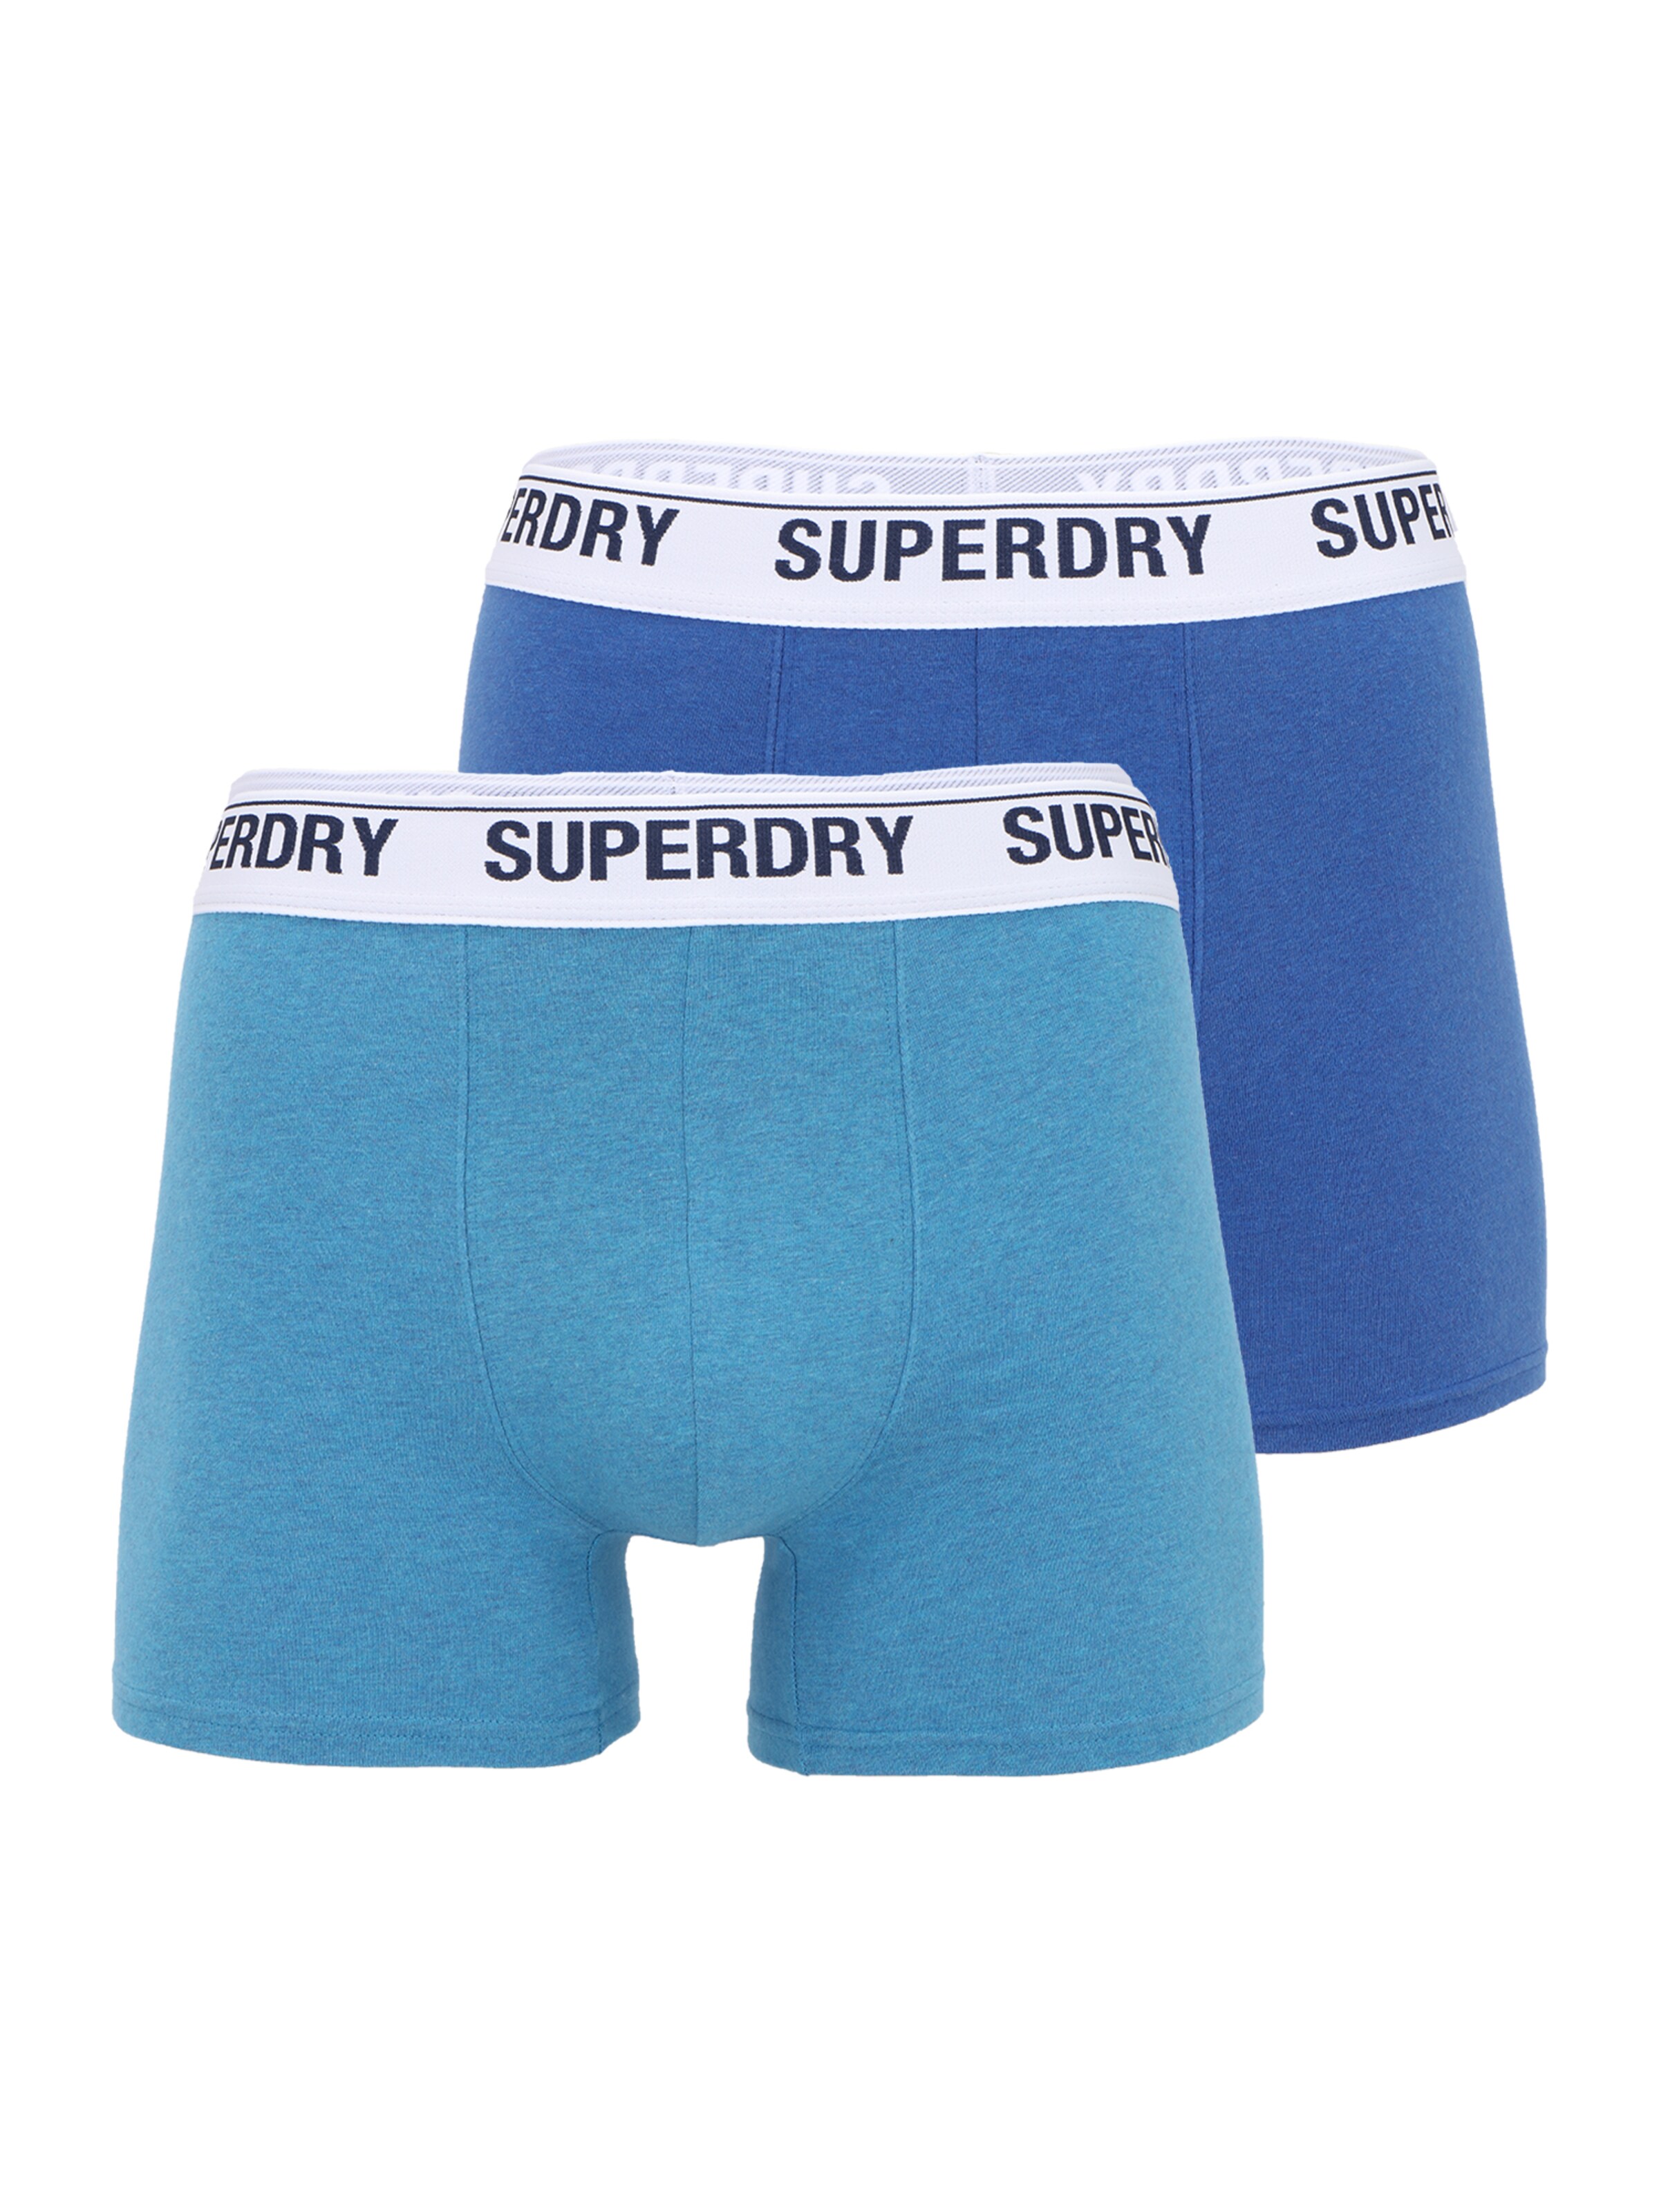 Sous-vêtements Boxers Superdry en Bleu Roi, Bleu Ciel 